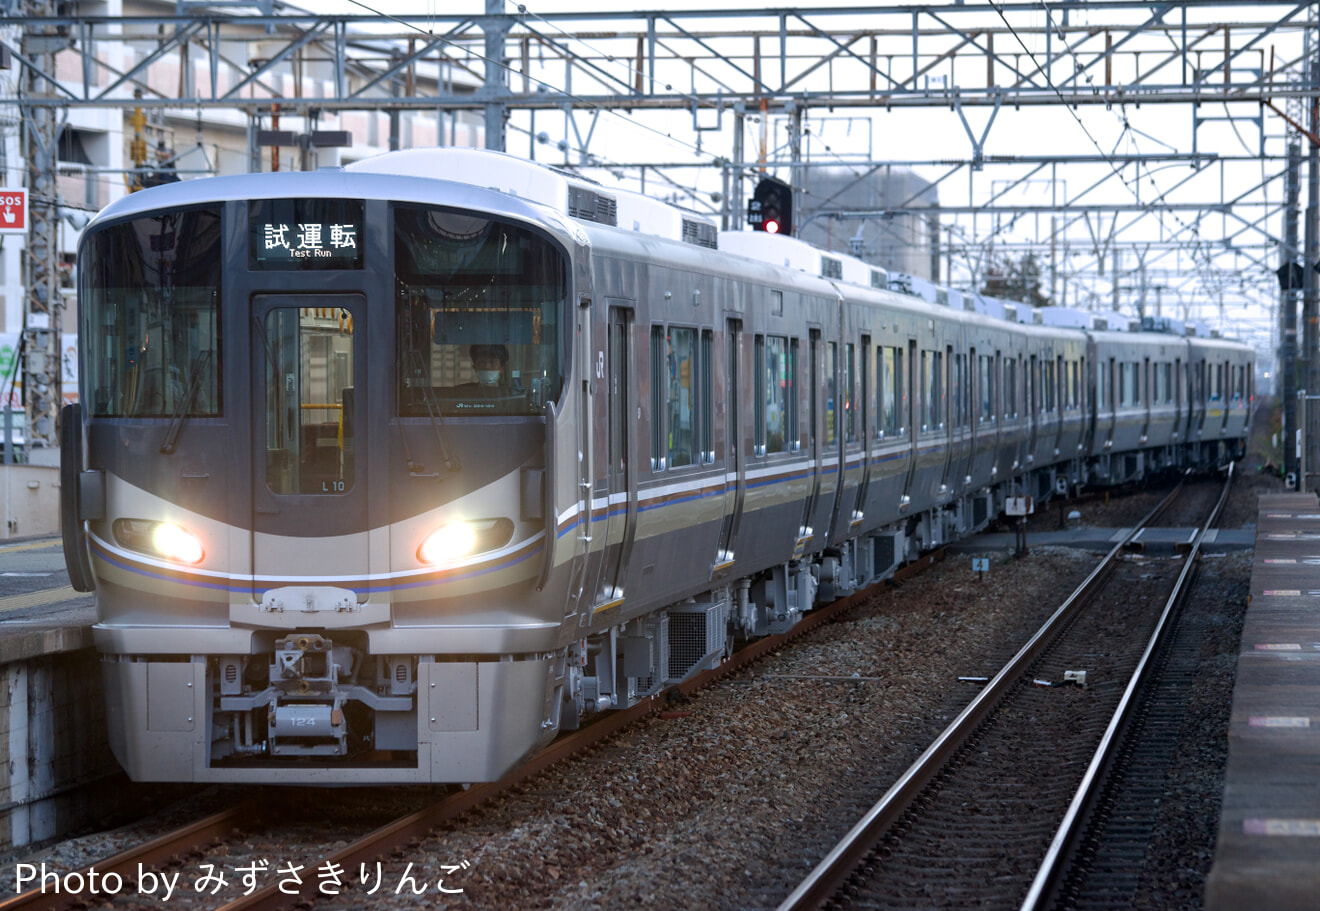 【JR西】225系L10編成本線試運転の拡大写真